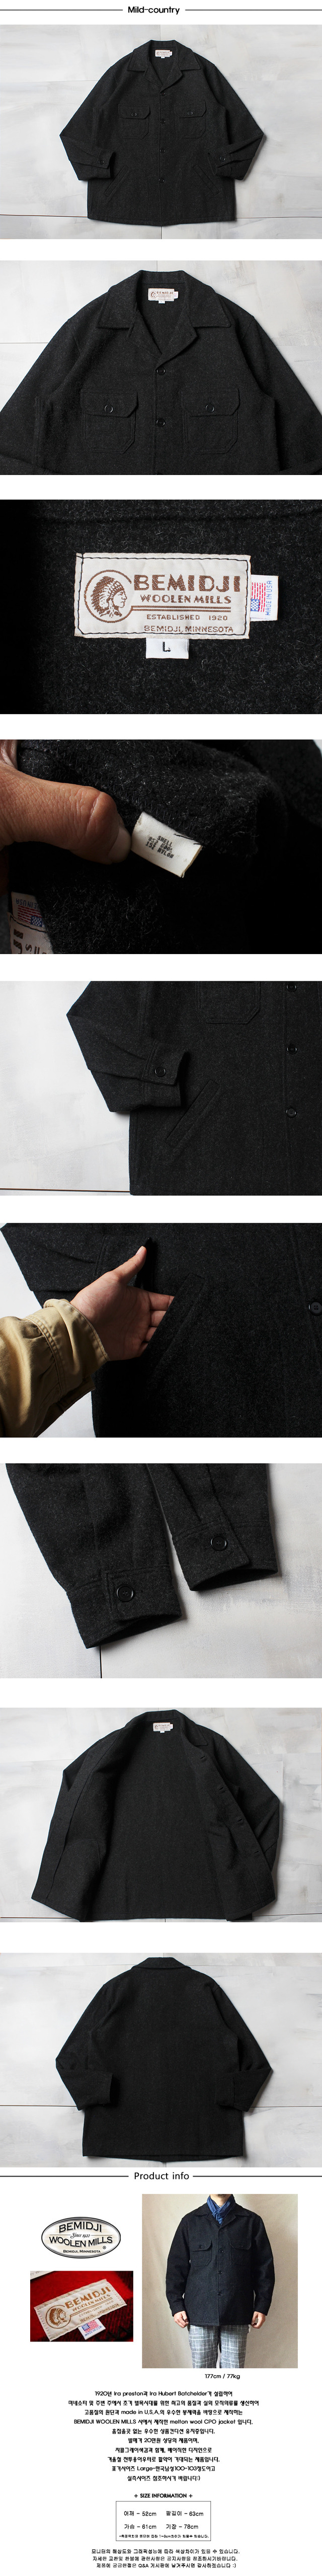 BEMIDJI WOOLEN MILLS melton wool CPO jacket(made in U.S.A.)